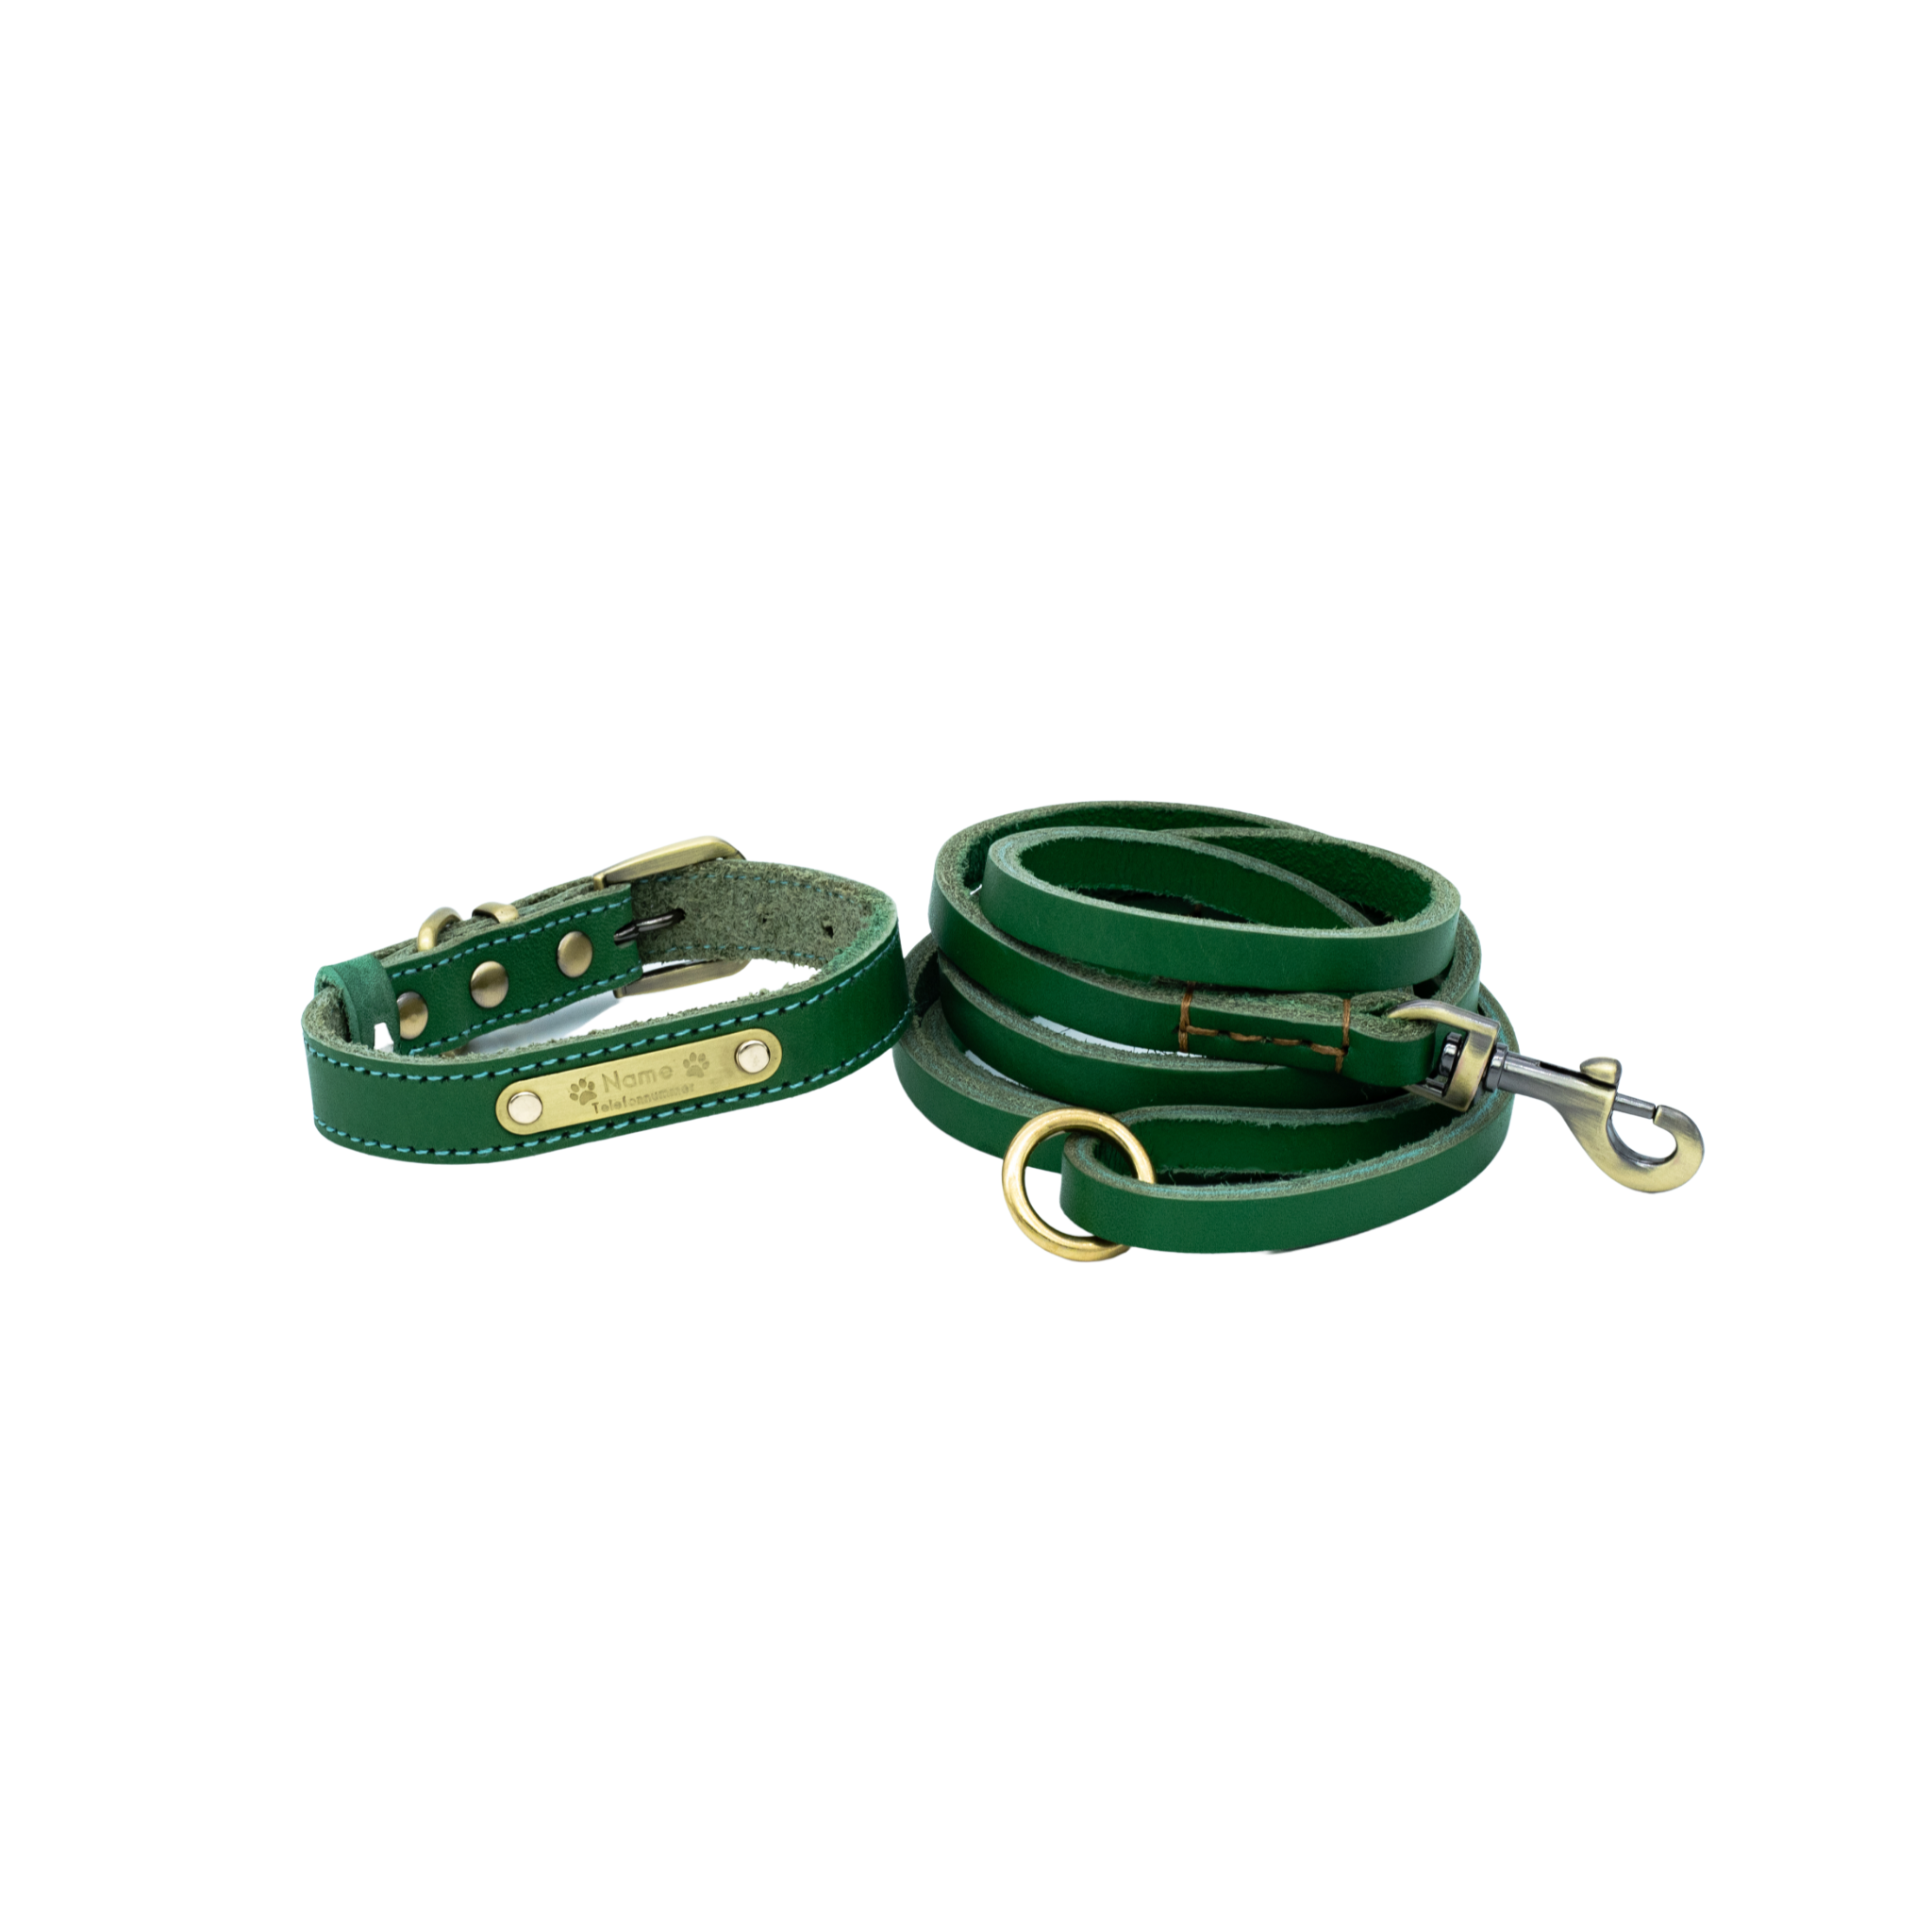 Premium Series Small Set - Halsband & Leine in Opalgrün